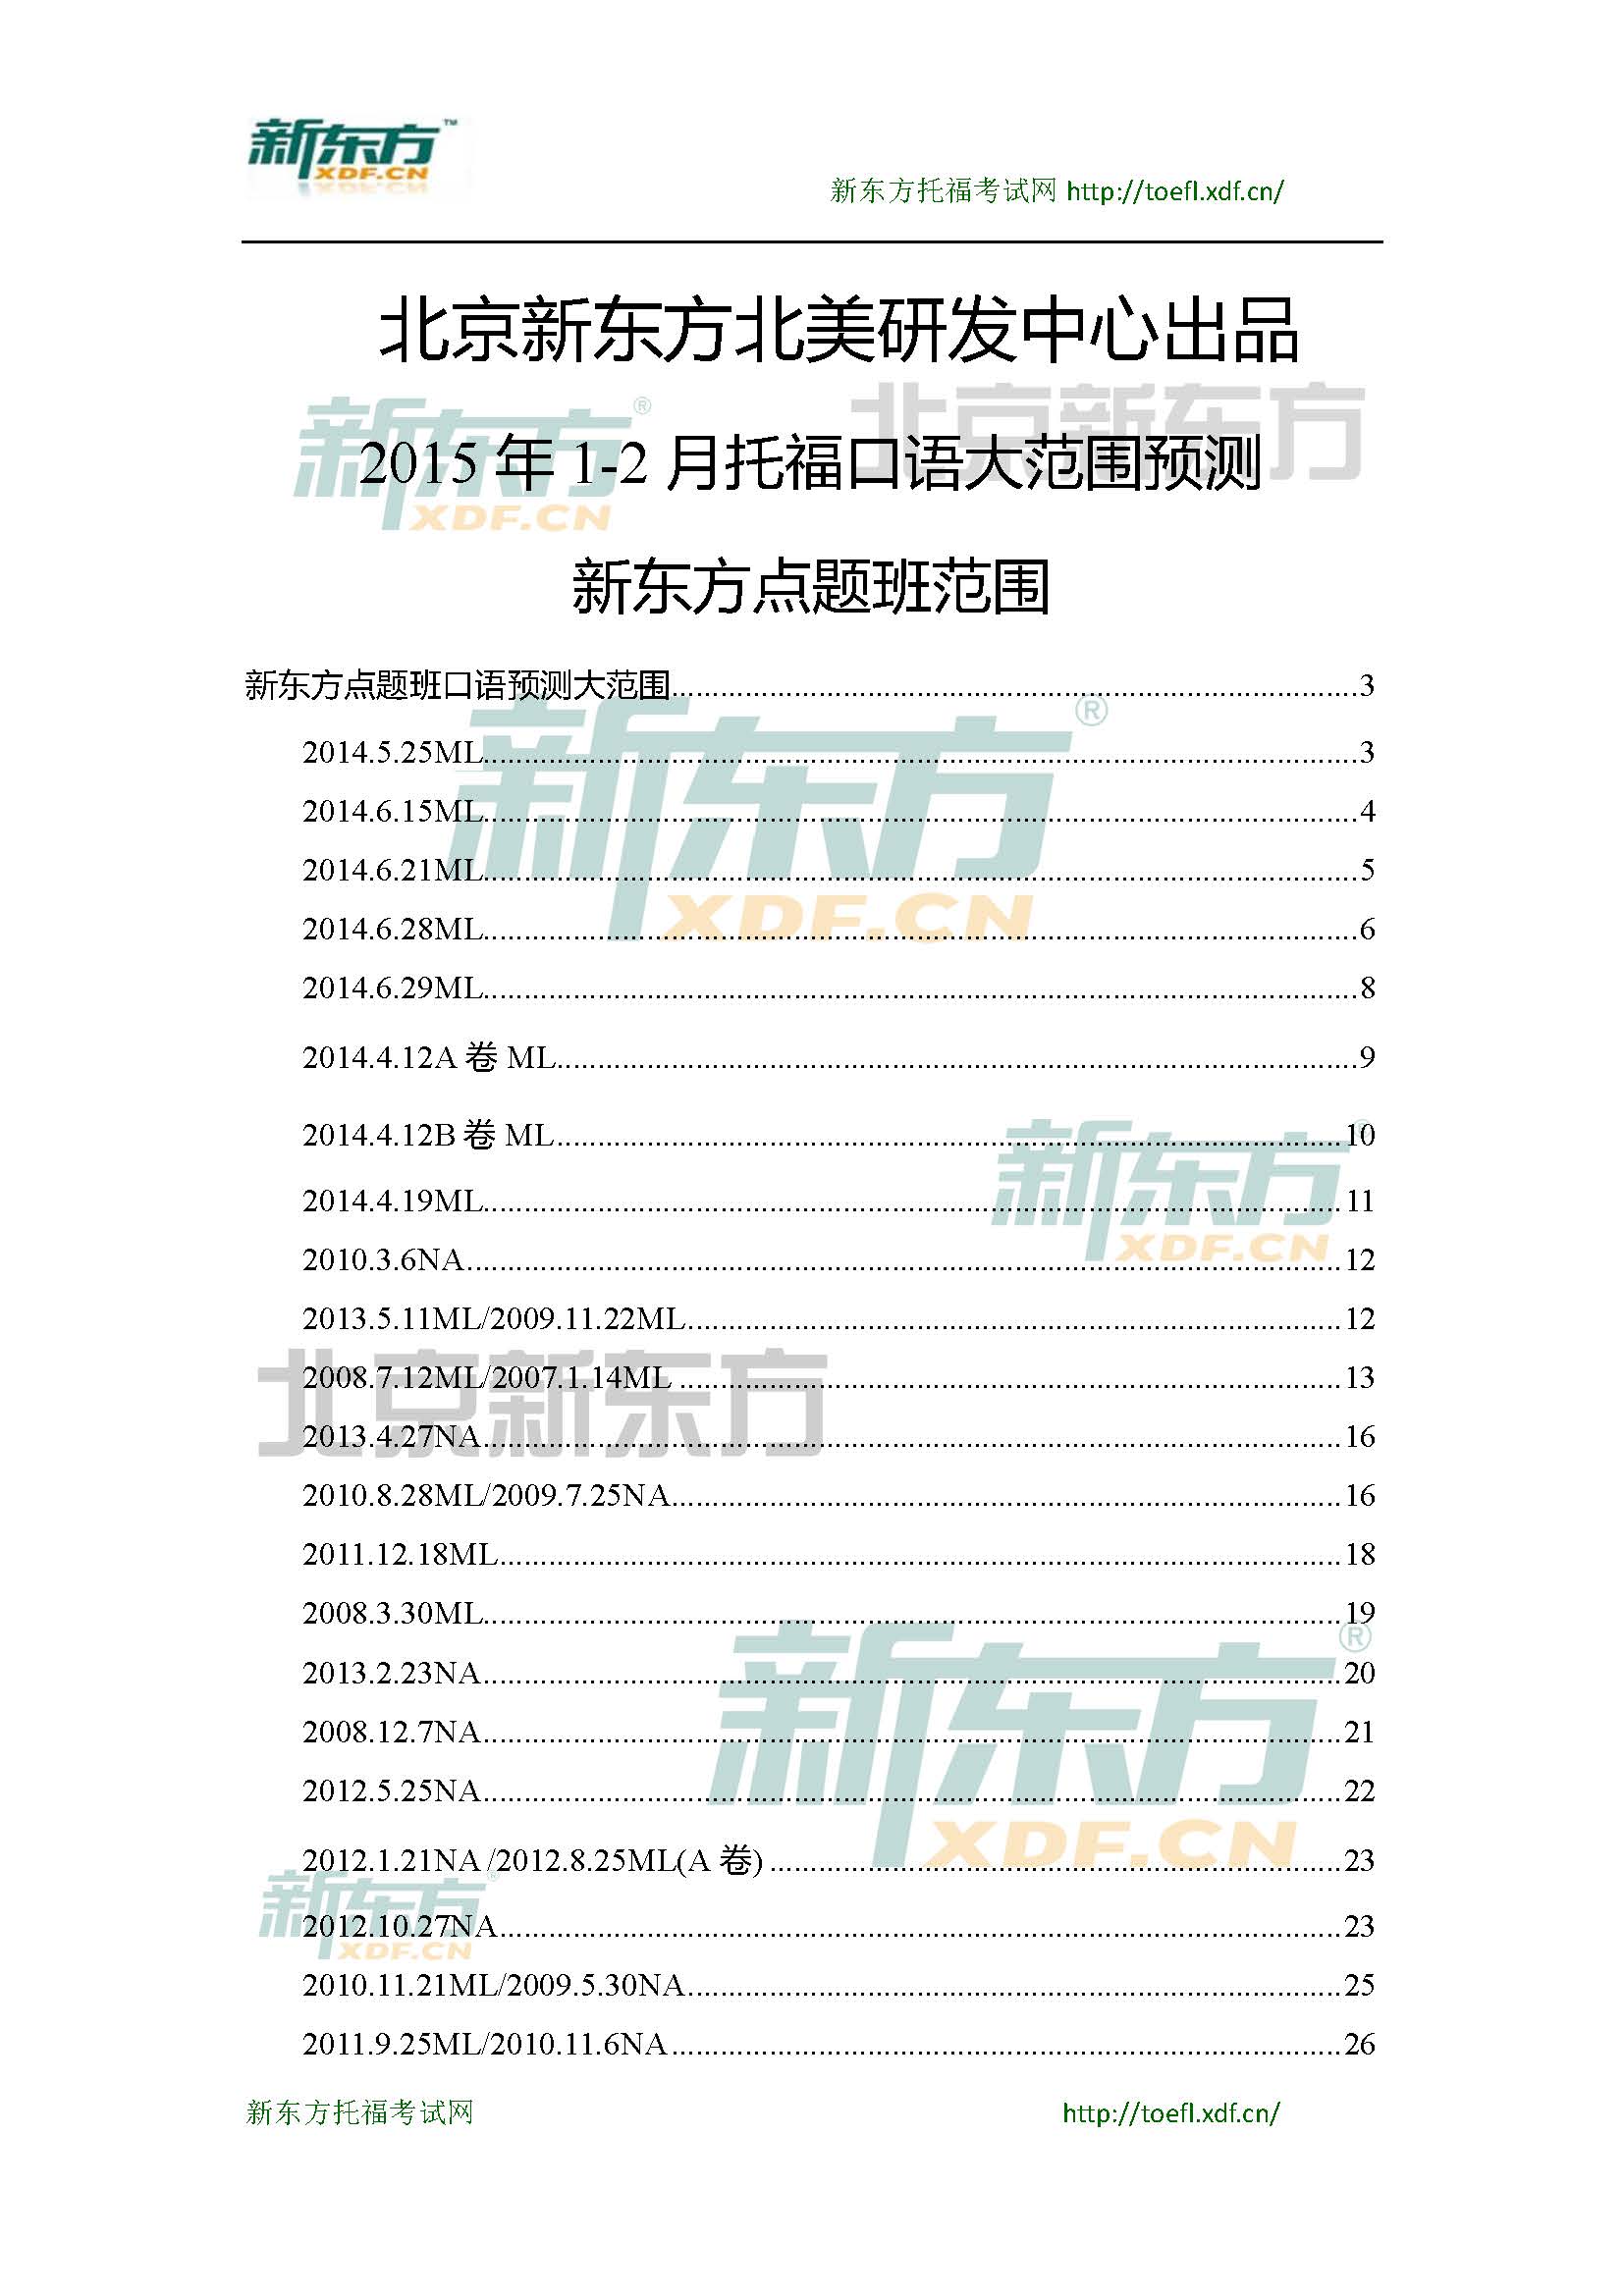 2015年1-2月托福口语大范围预测